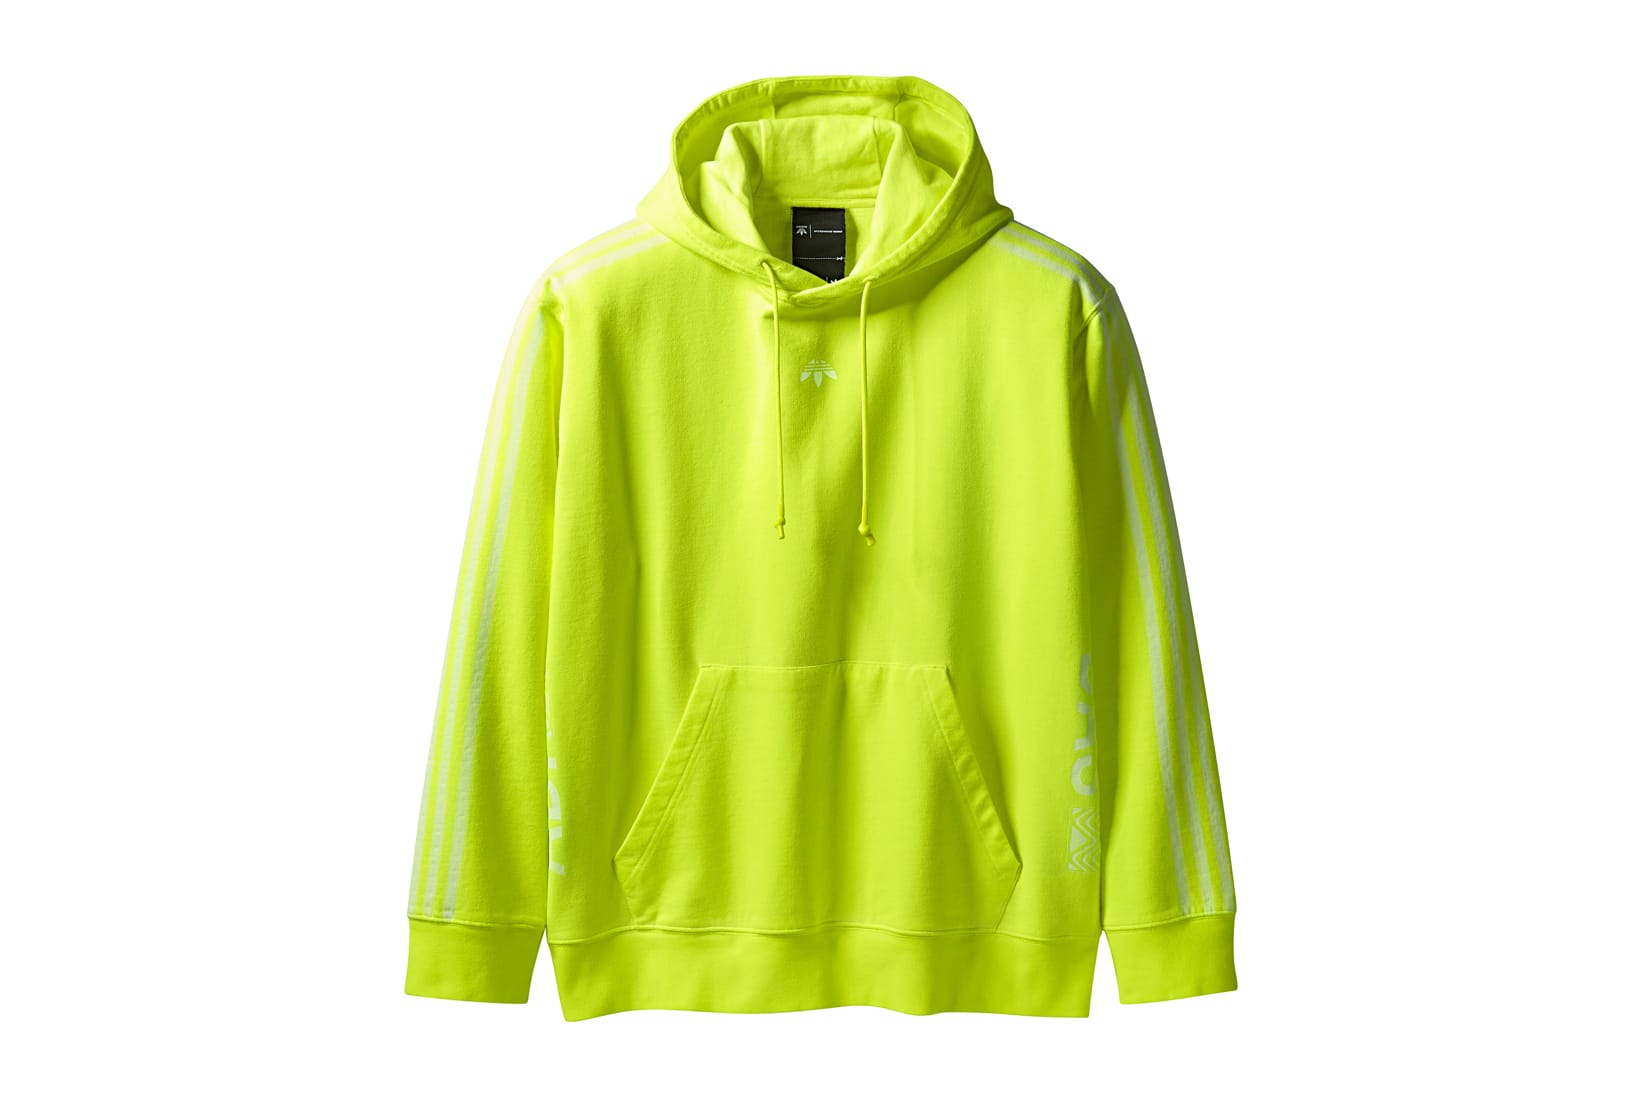 adidas hoodie neon